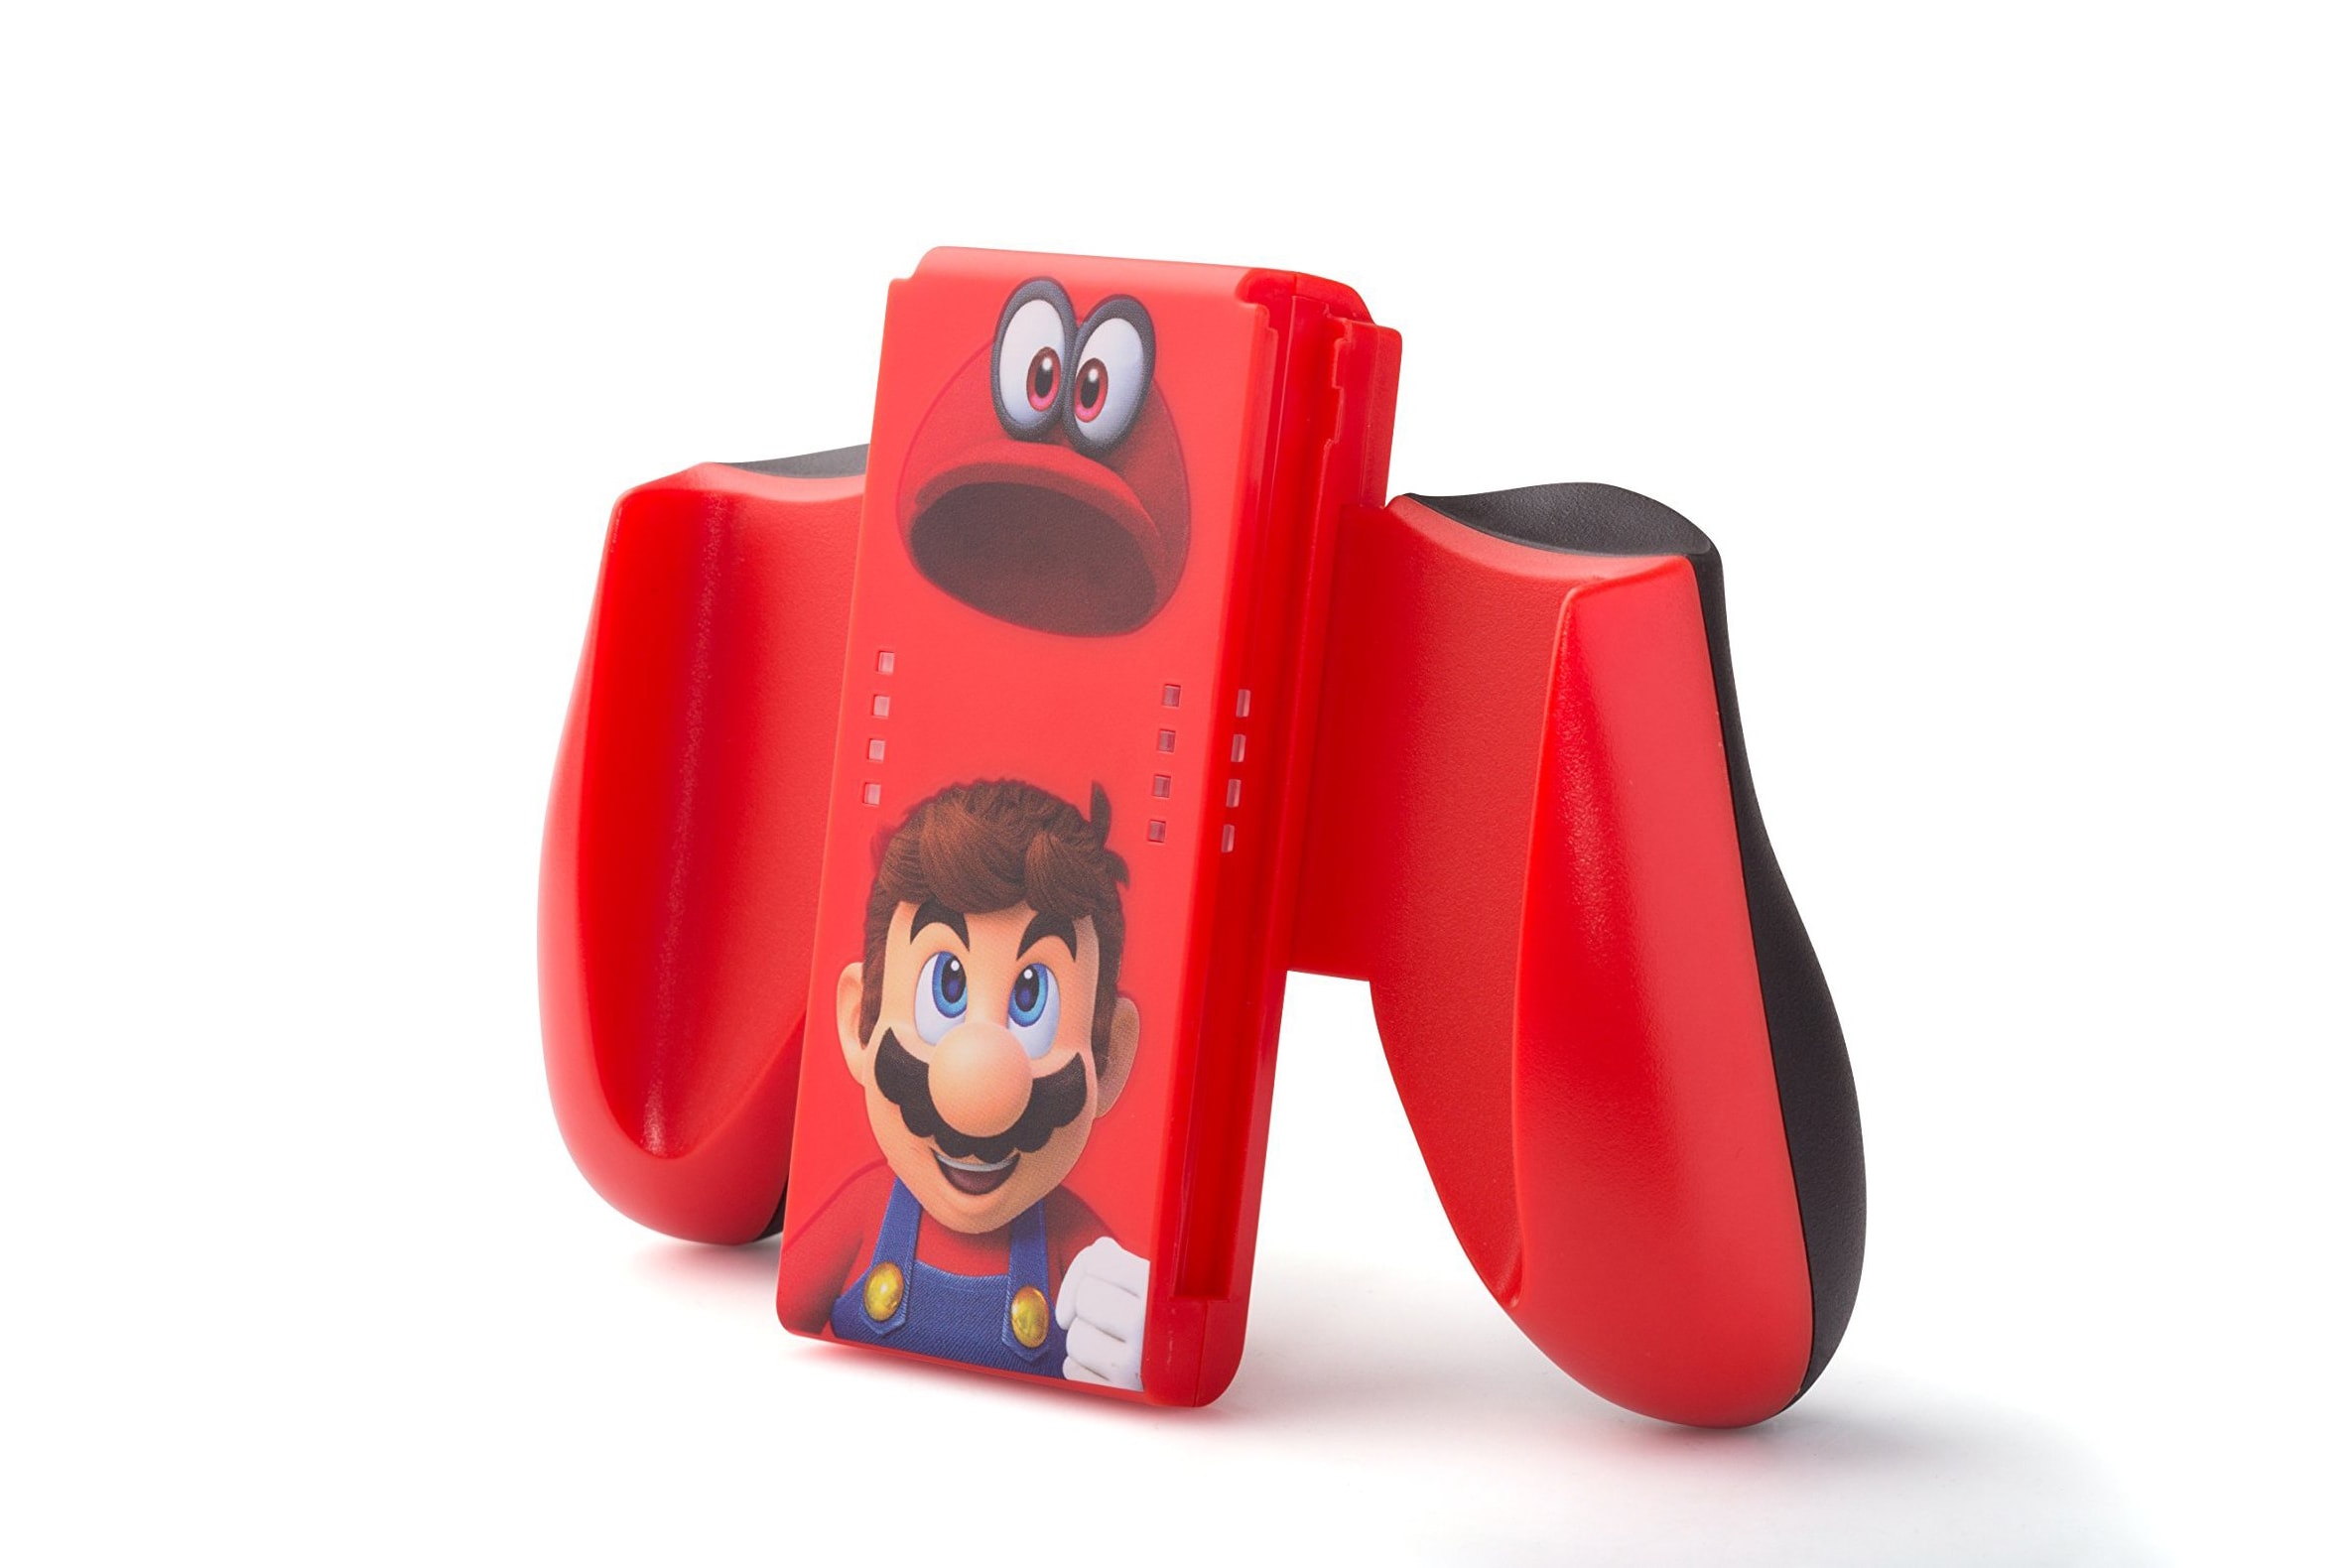 週邊品牌 PowerA 推出全紅色 Nintendo Switch Joy-Con 手掣